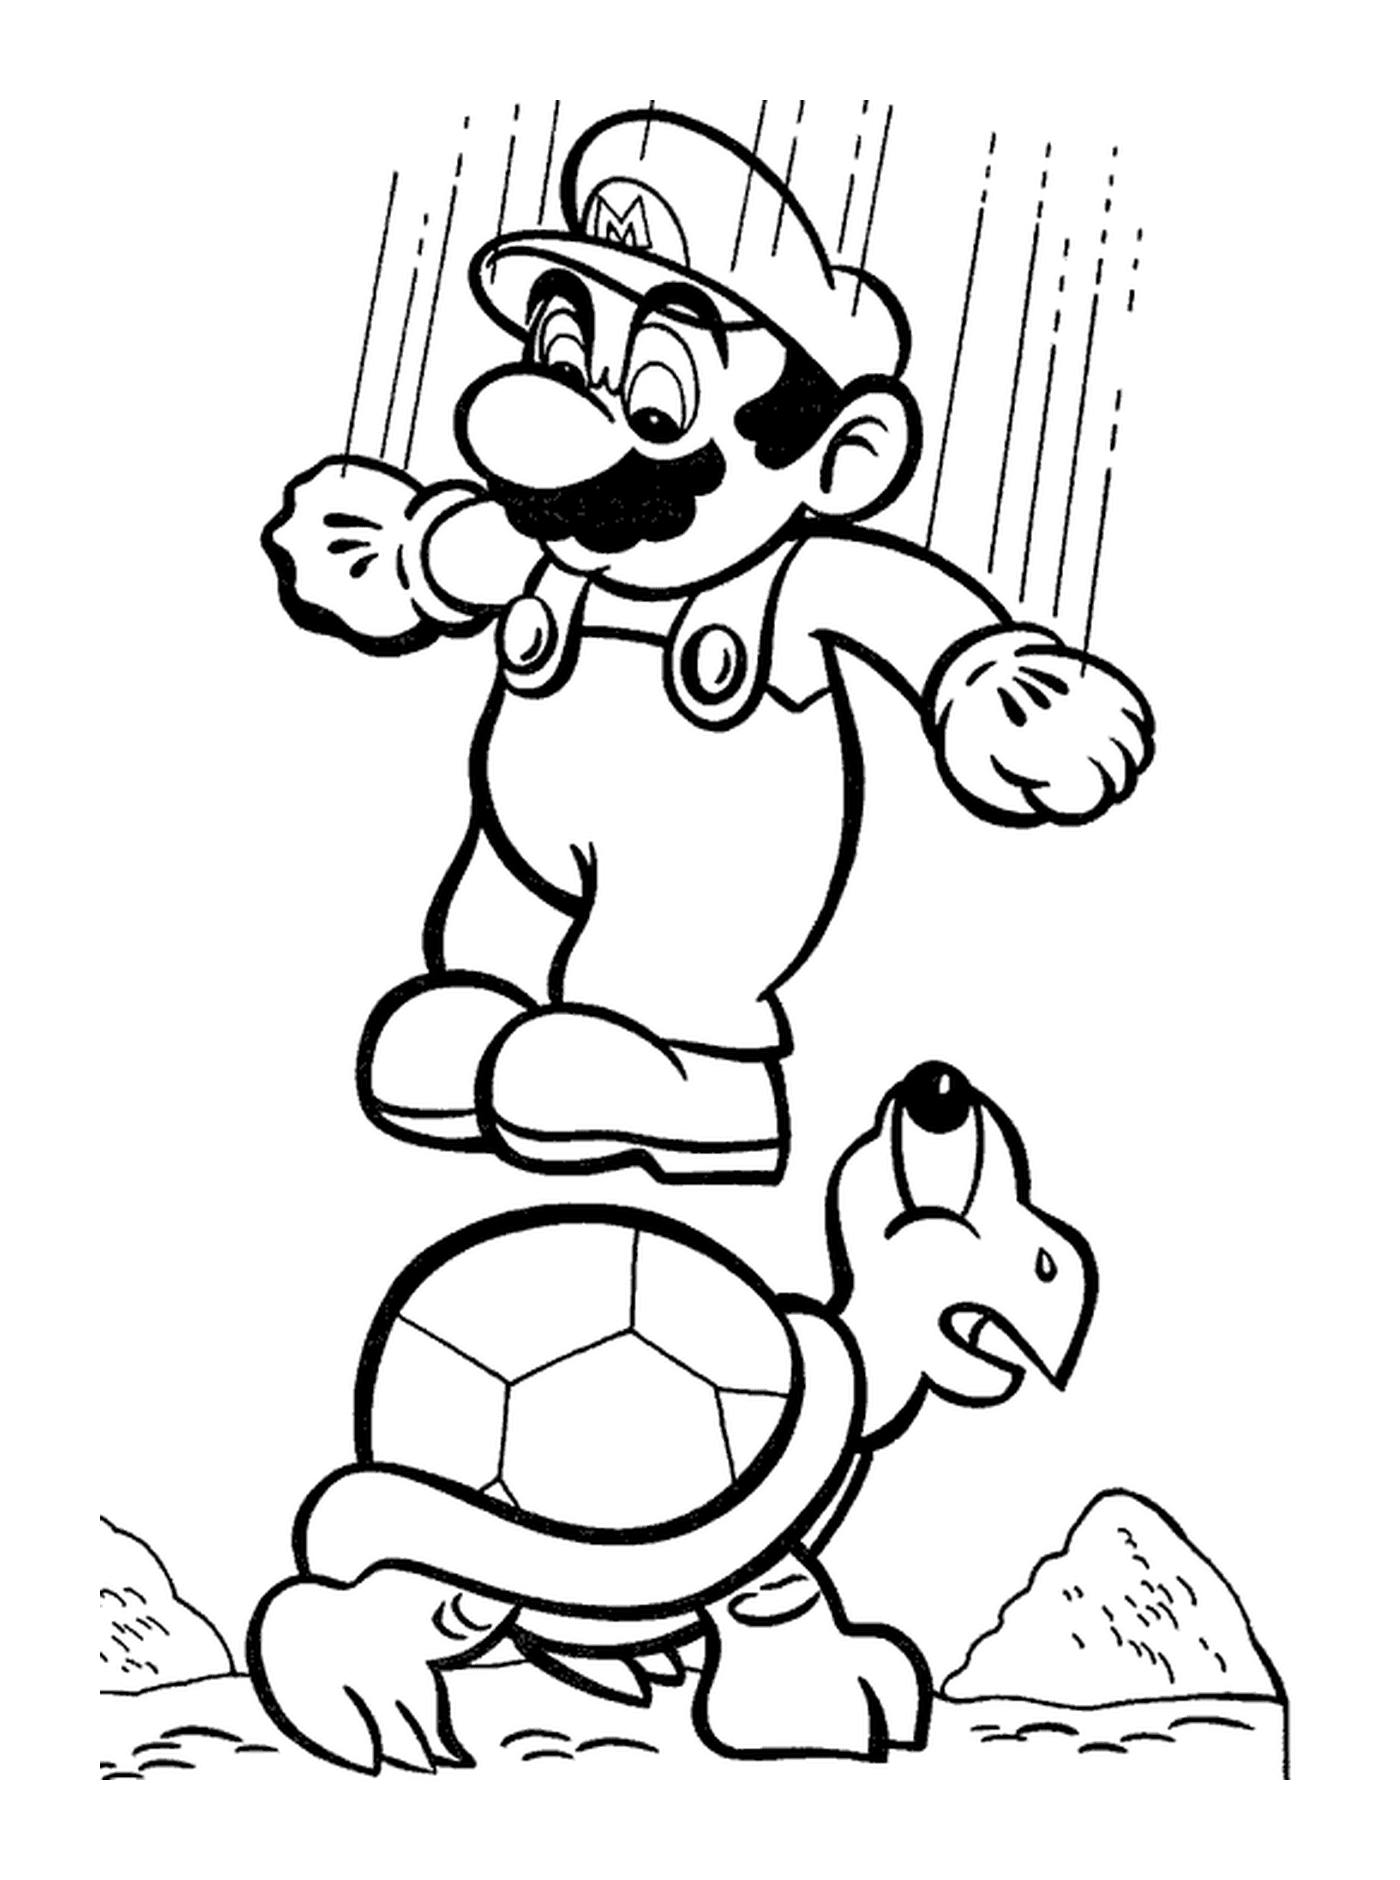  Mario springt auf eine Schildkröte, die Fußball spielt 